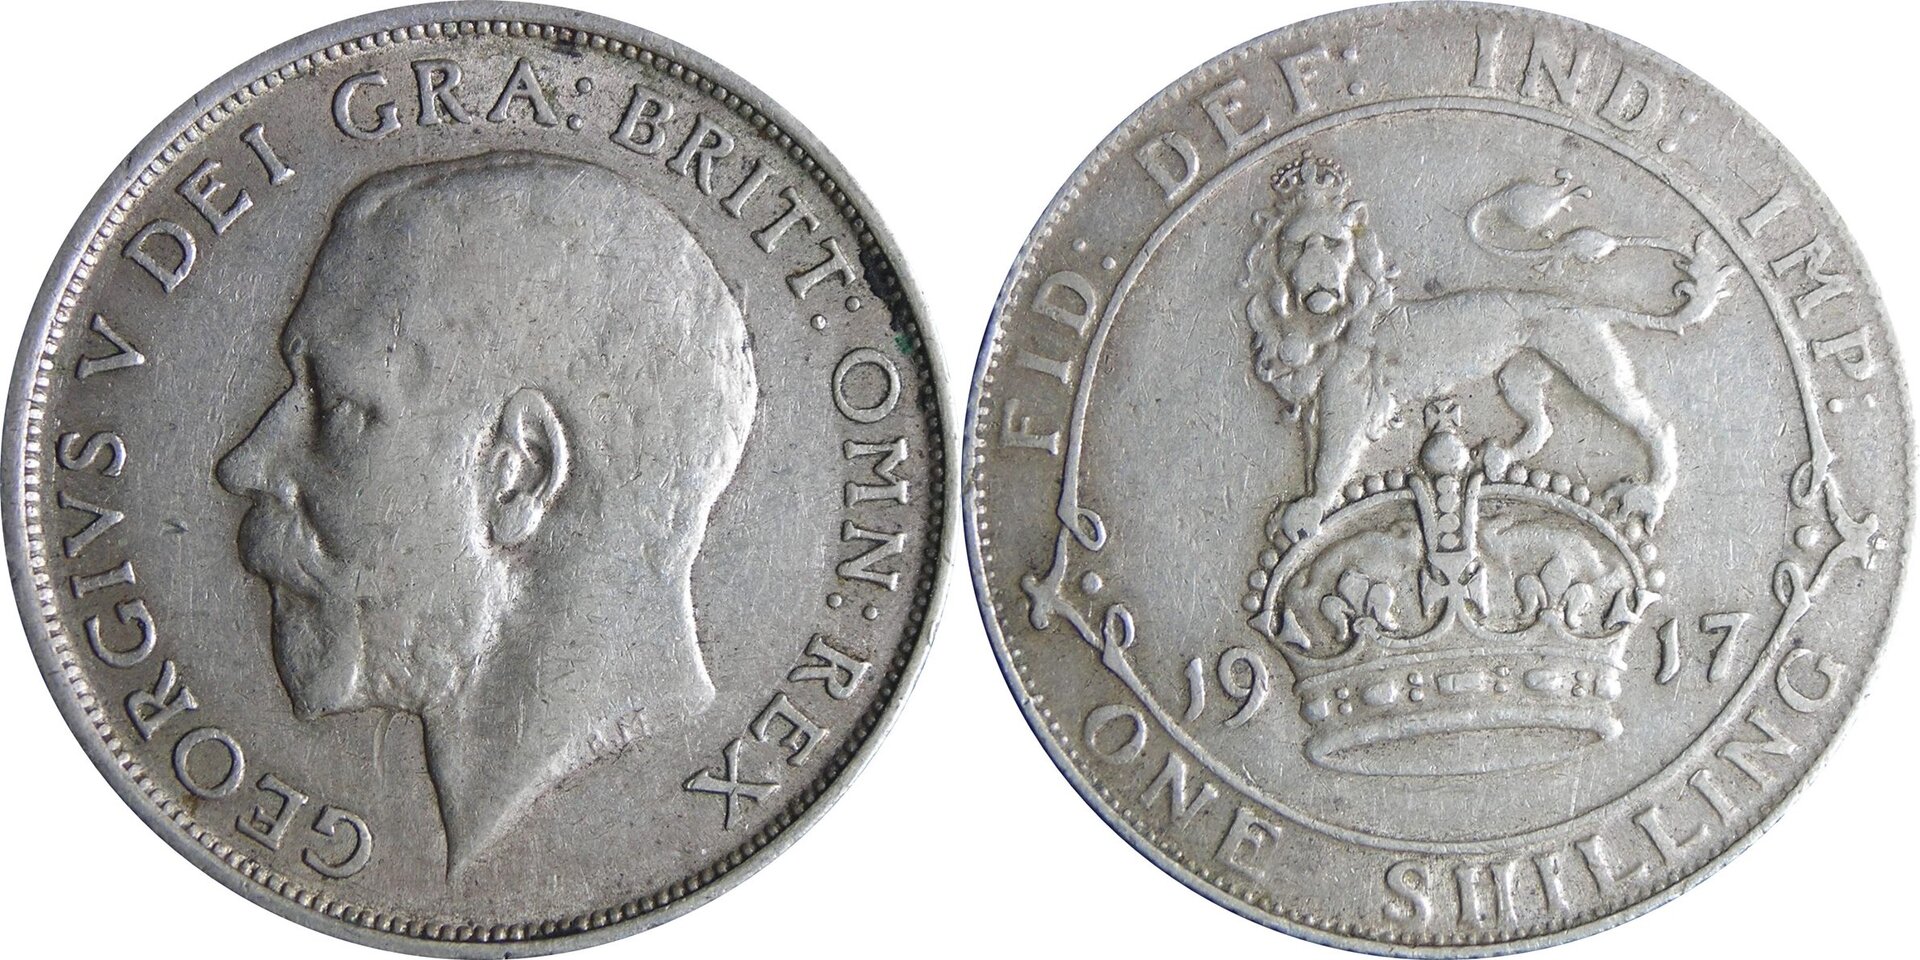 1917 GB shilling.jpg